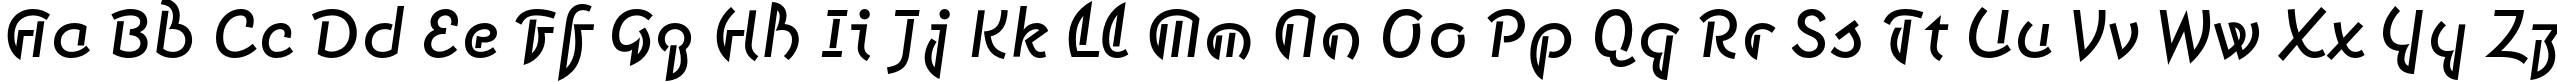 Пример написания английского алфавита шрифтом Smena Medium